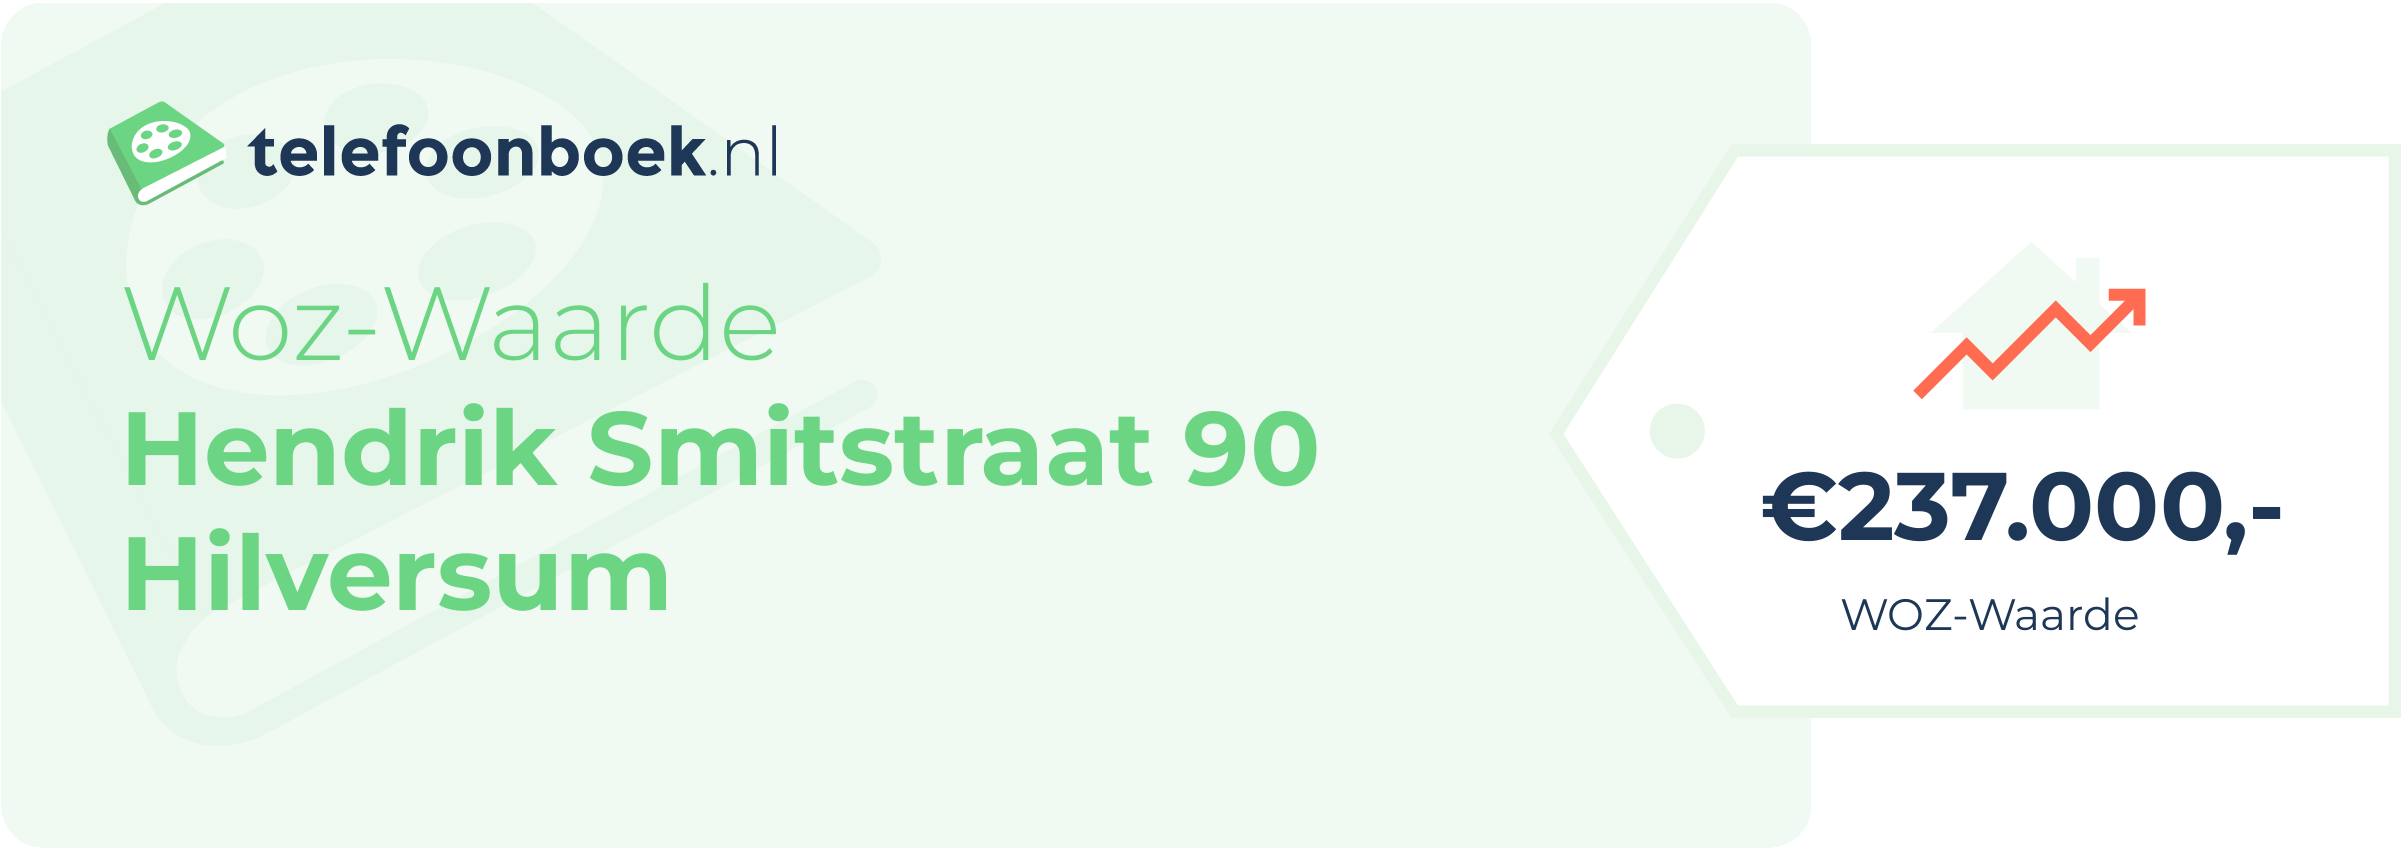 WOZ-waarde Hendrik Smitstraat 90 Hilversum